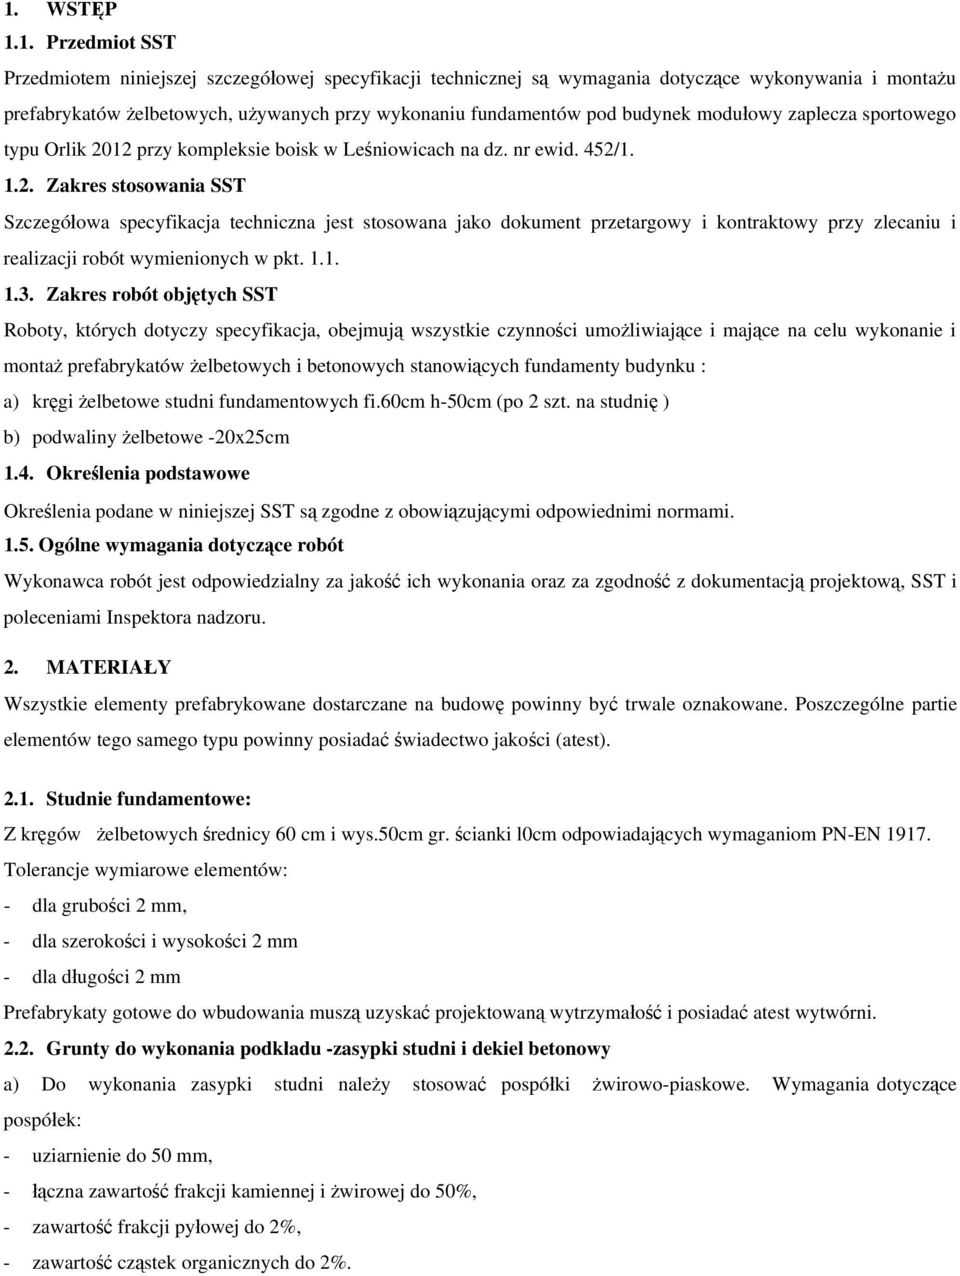 12 przy kompleksie boisk w Leśniowicach na dz. nr ewid. 452/1. 1.2. Zakres stosowania SST Szczegółowa specyfikacja techniczna jest stosowana jako dokument przetargowy i kontraktowy przy zlecaniu i realizacji robót wymienionych w pkt.